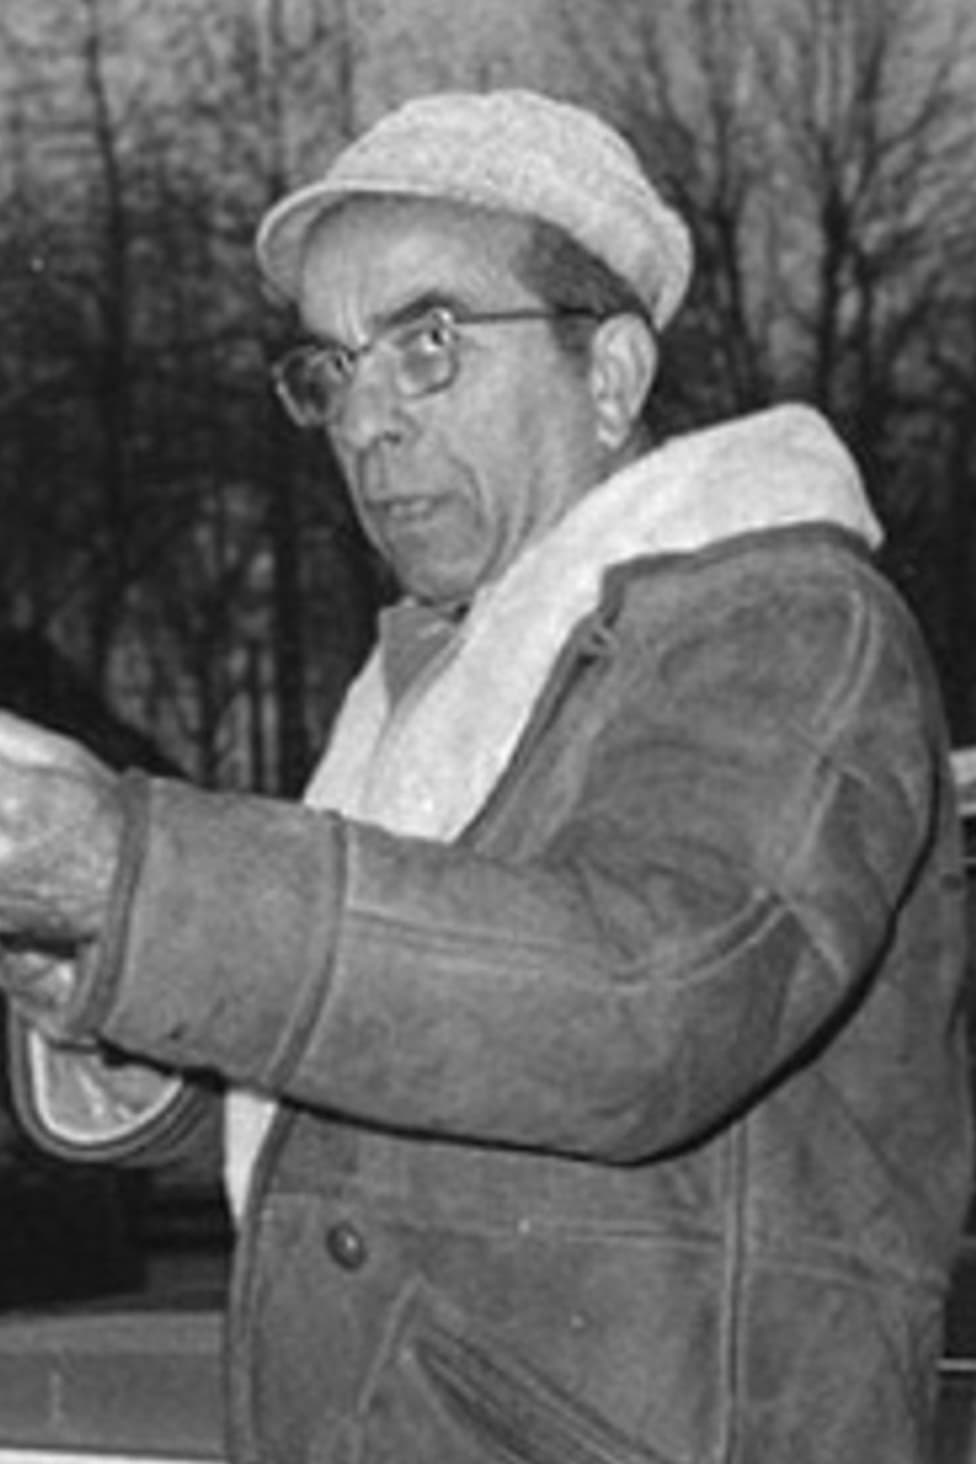 Massimo Dallamano